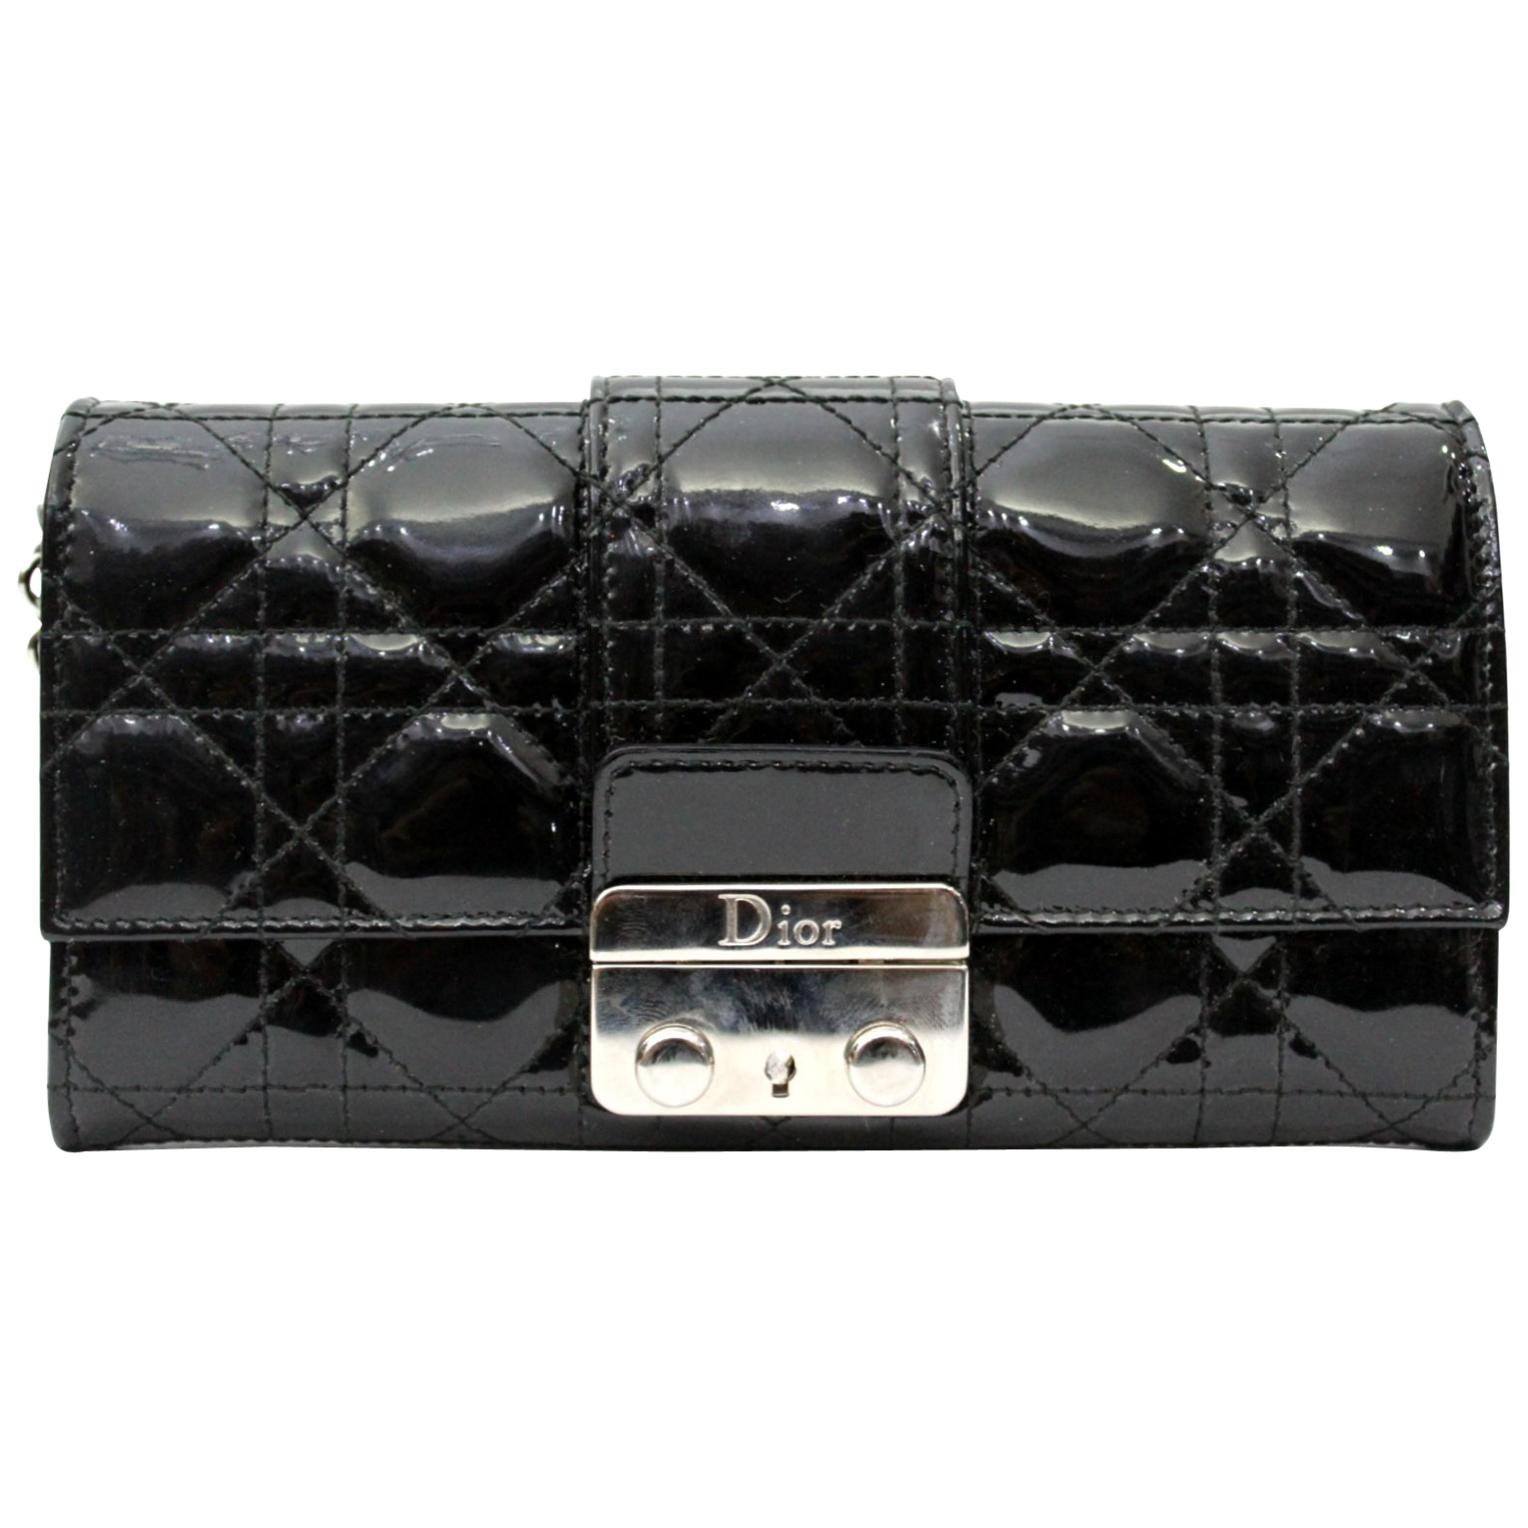 Dior Pochette/Wallet Black Vernis Leather